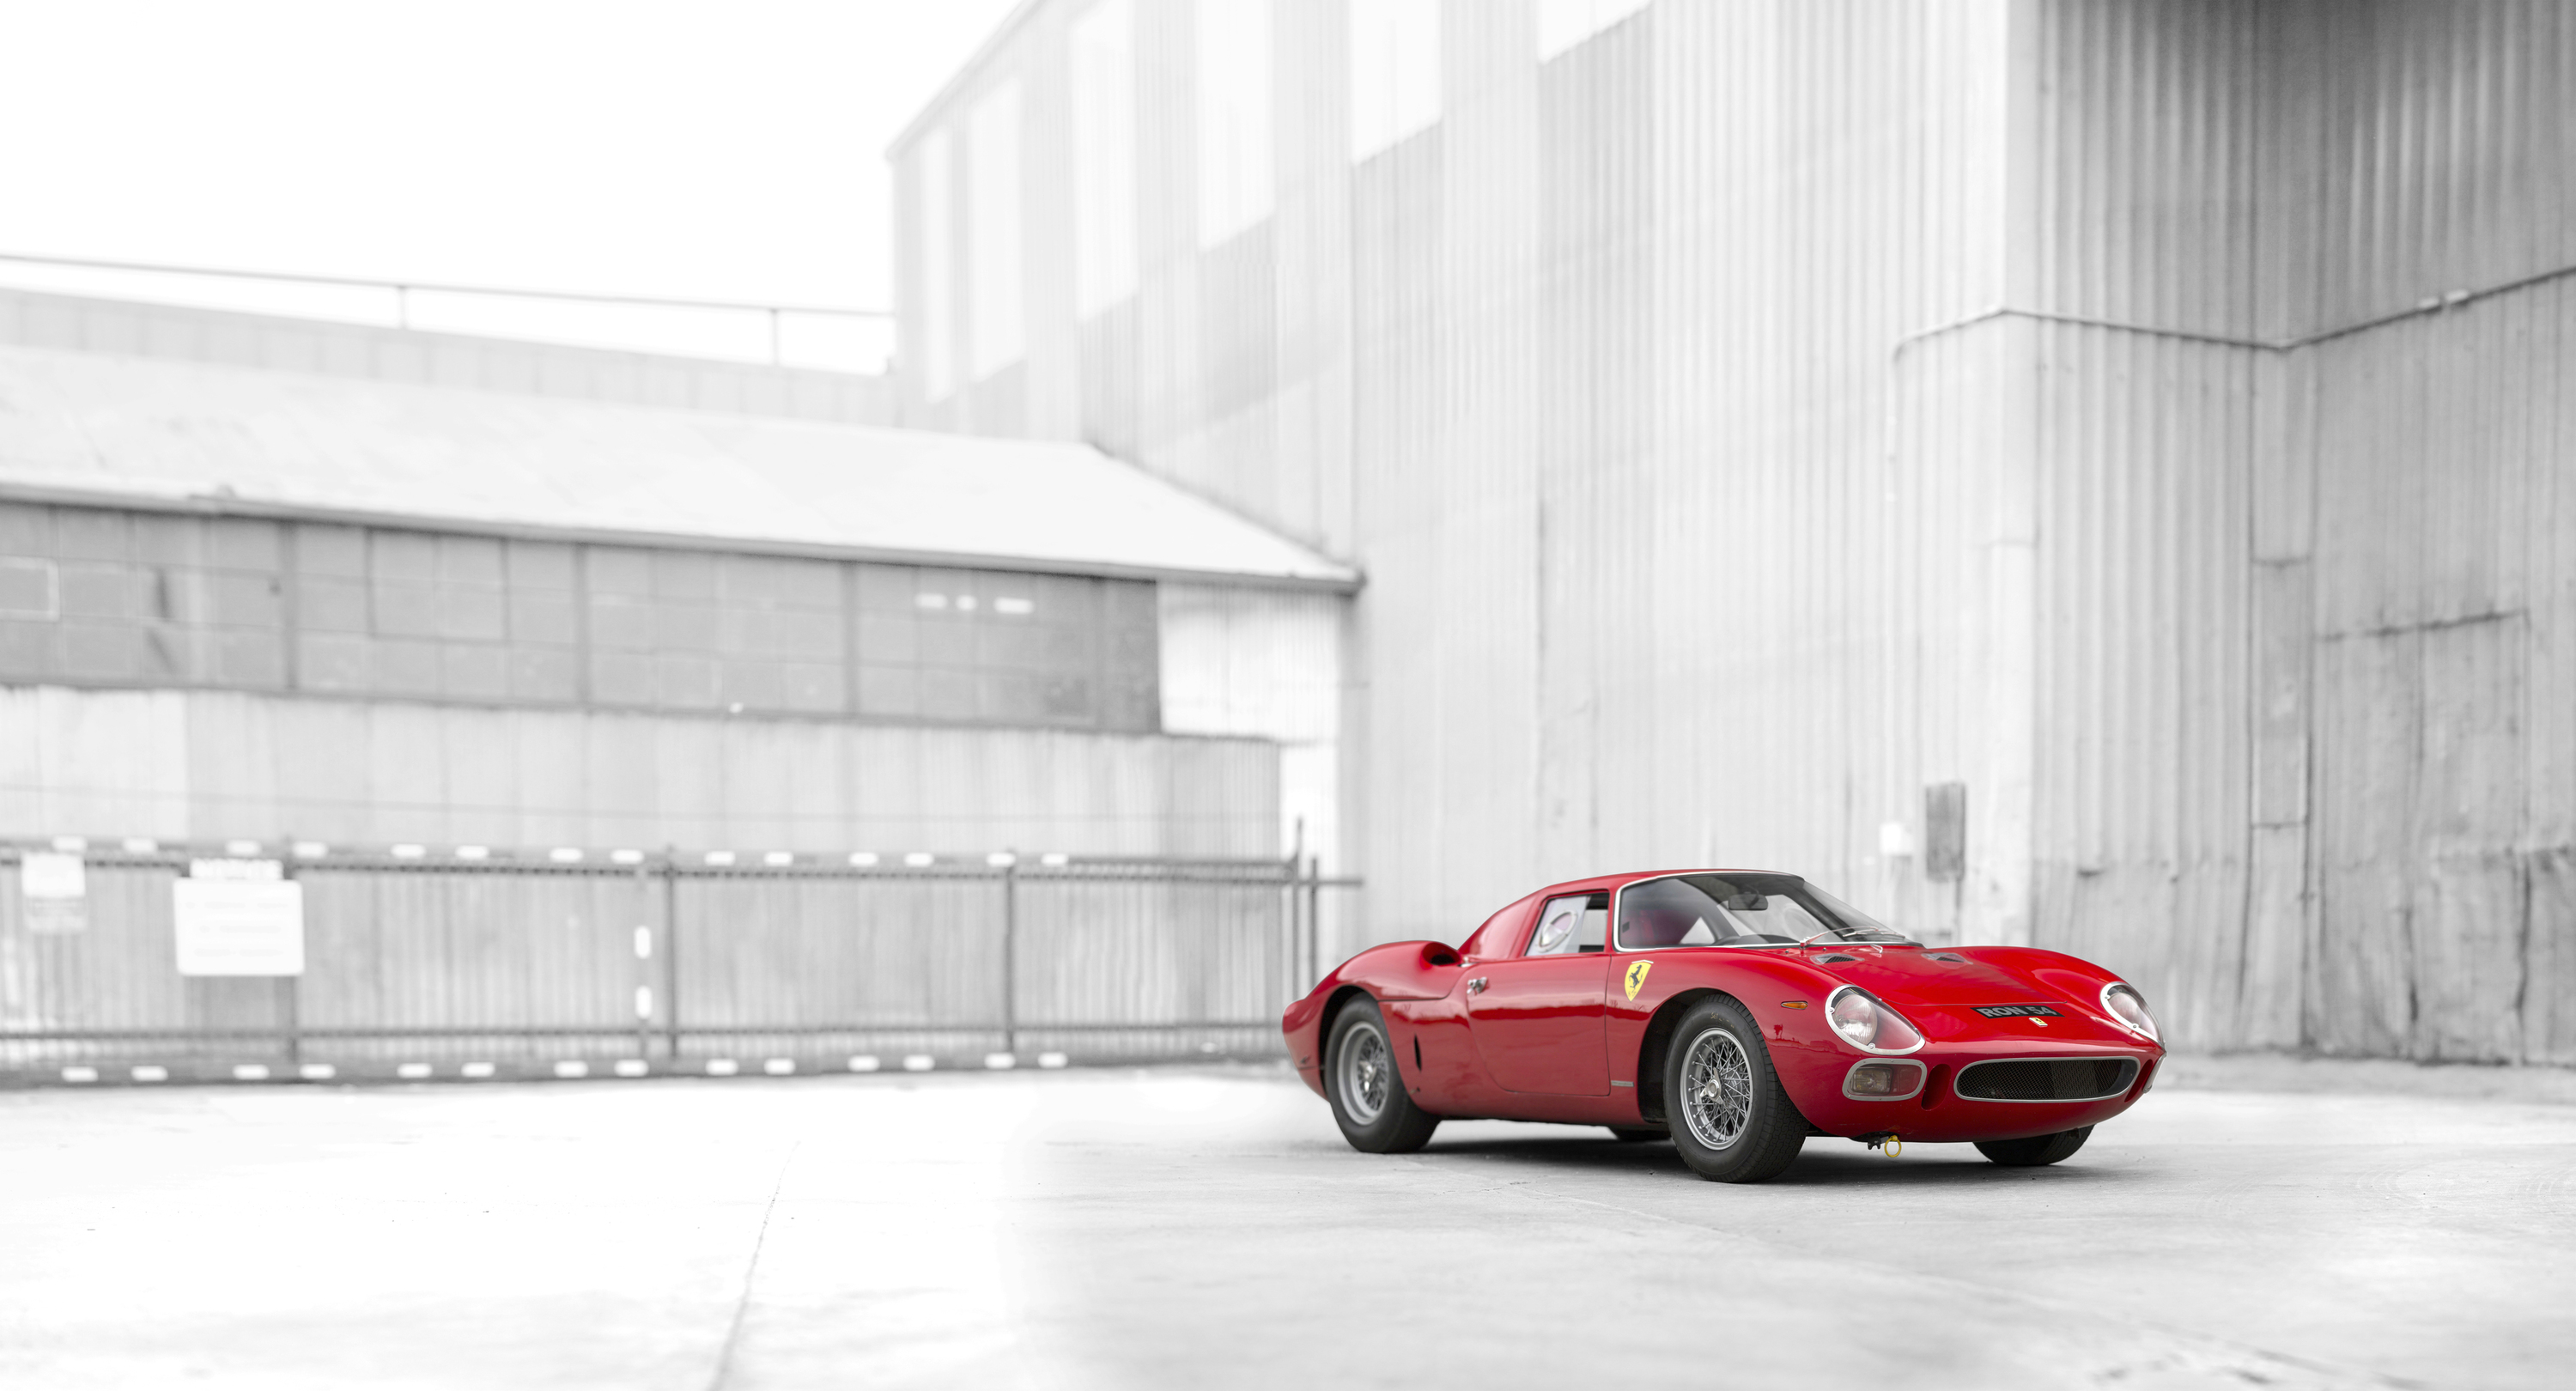 为了符合当代参赛规则而打造的 Ferrari 250 LM by Scaglietti，仅生产了 32 部。